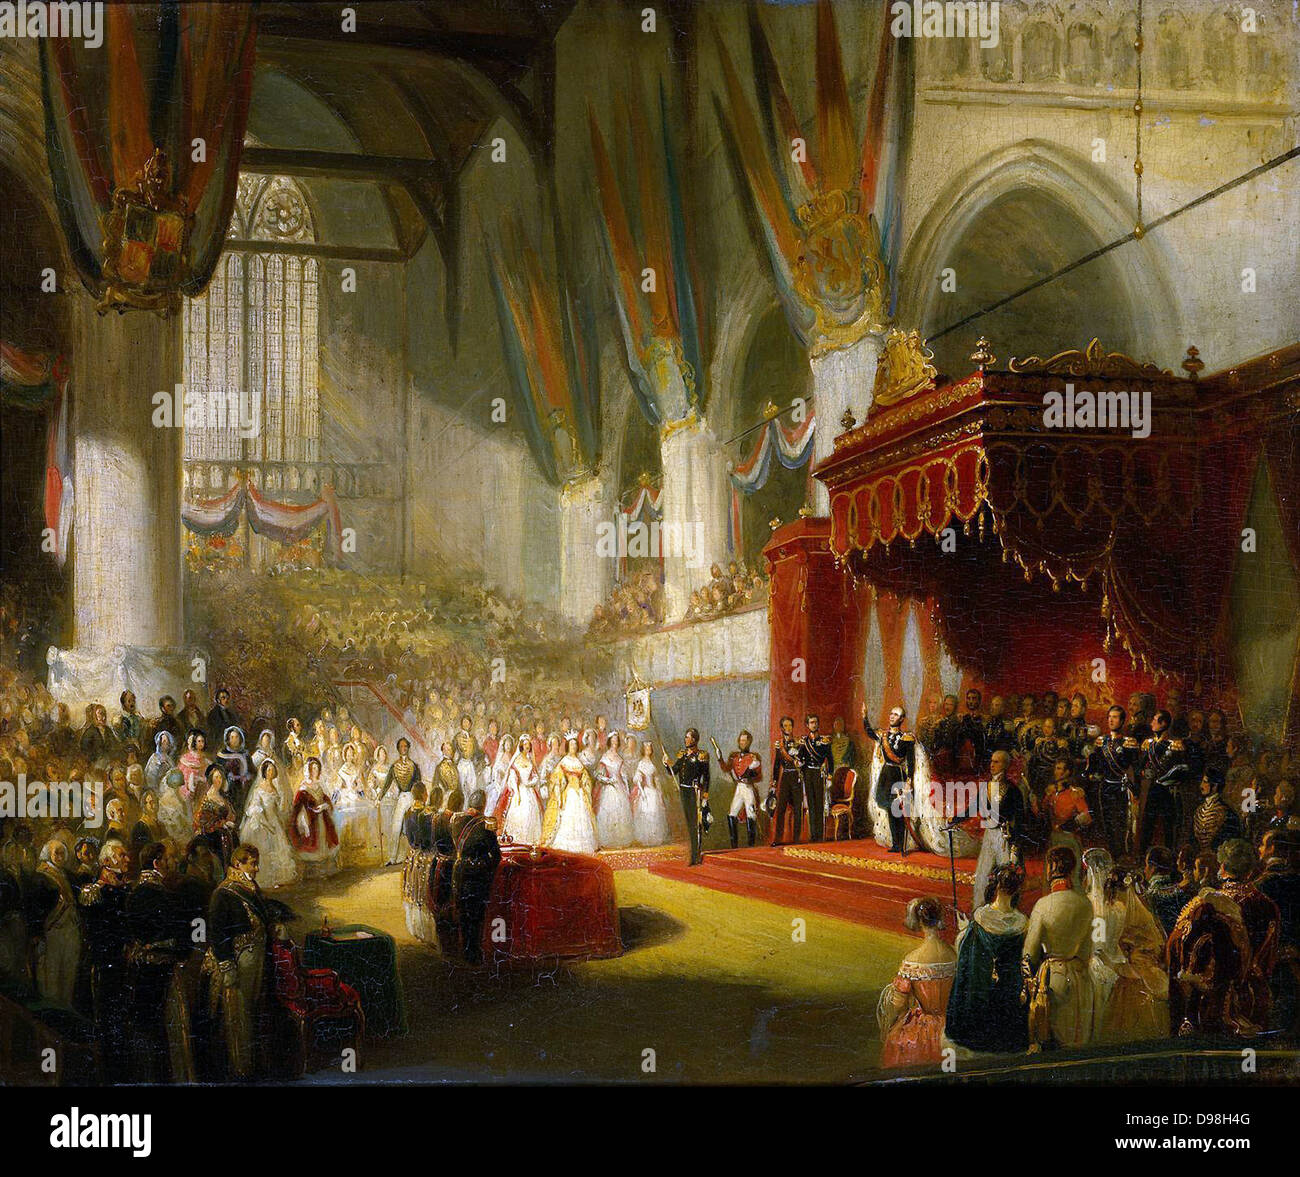 L'inaugurazione del Re Guglielmo II nel Nieuwe Kerk, Amsterdam, 28 Novembre 1840 da Nicolaas Pieneman, c. 1840-50 Foto Stock